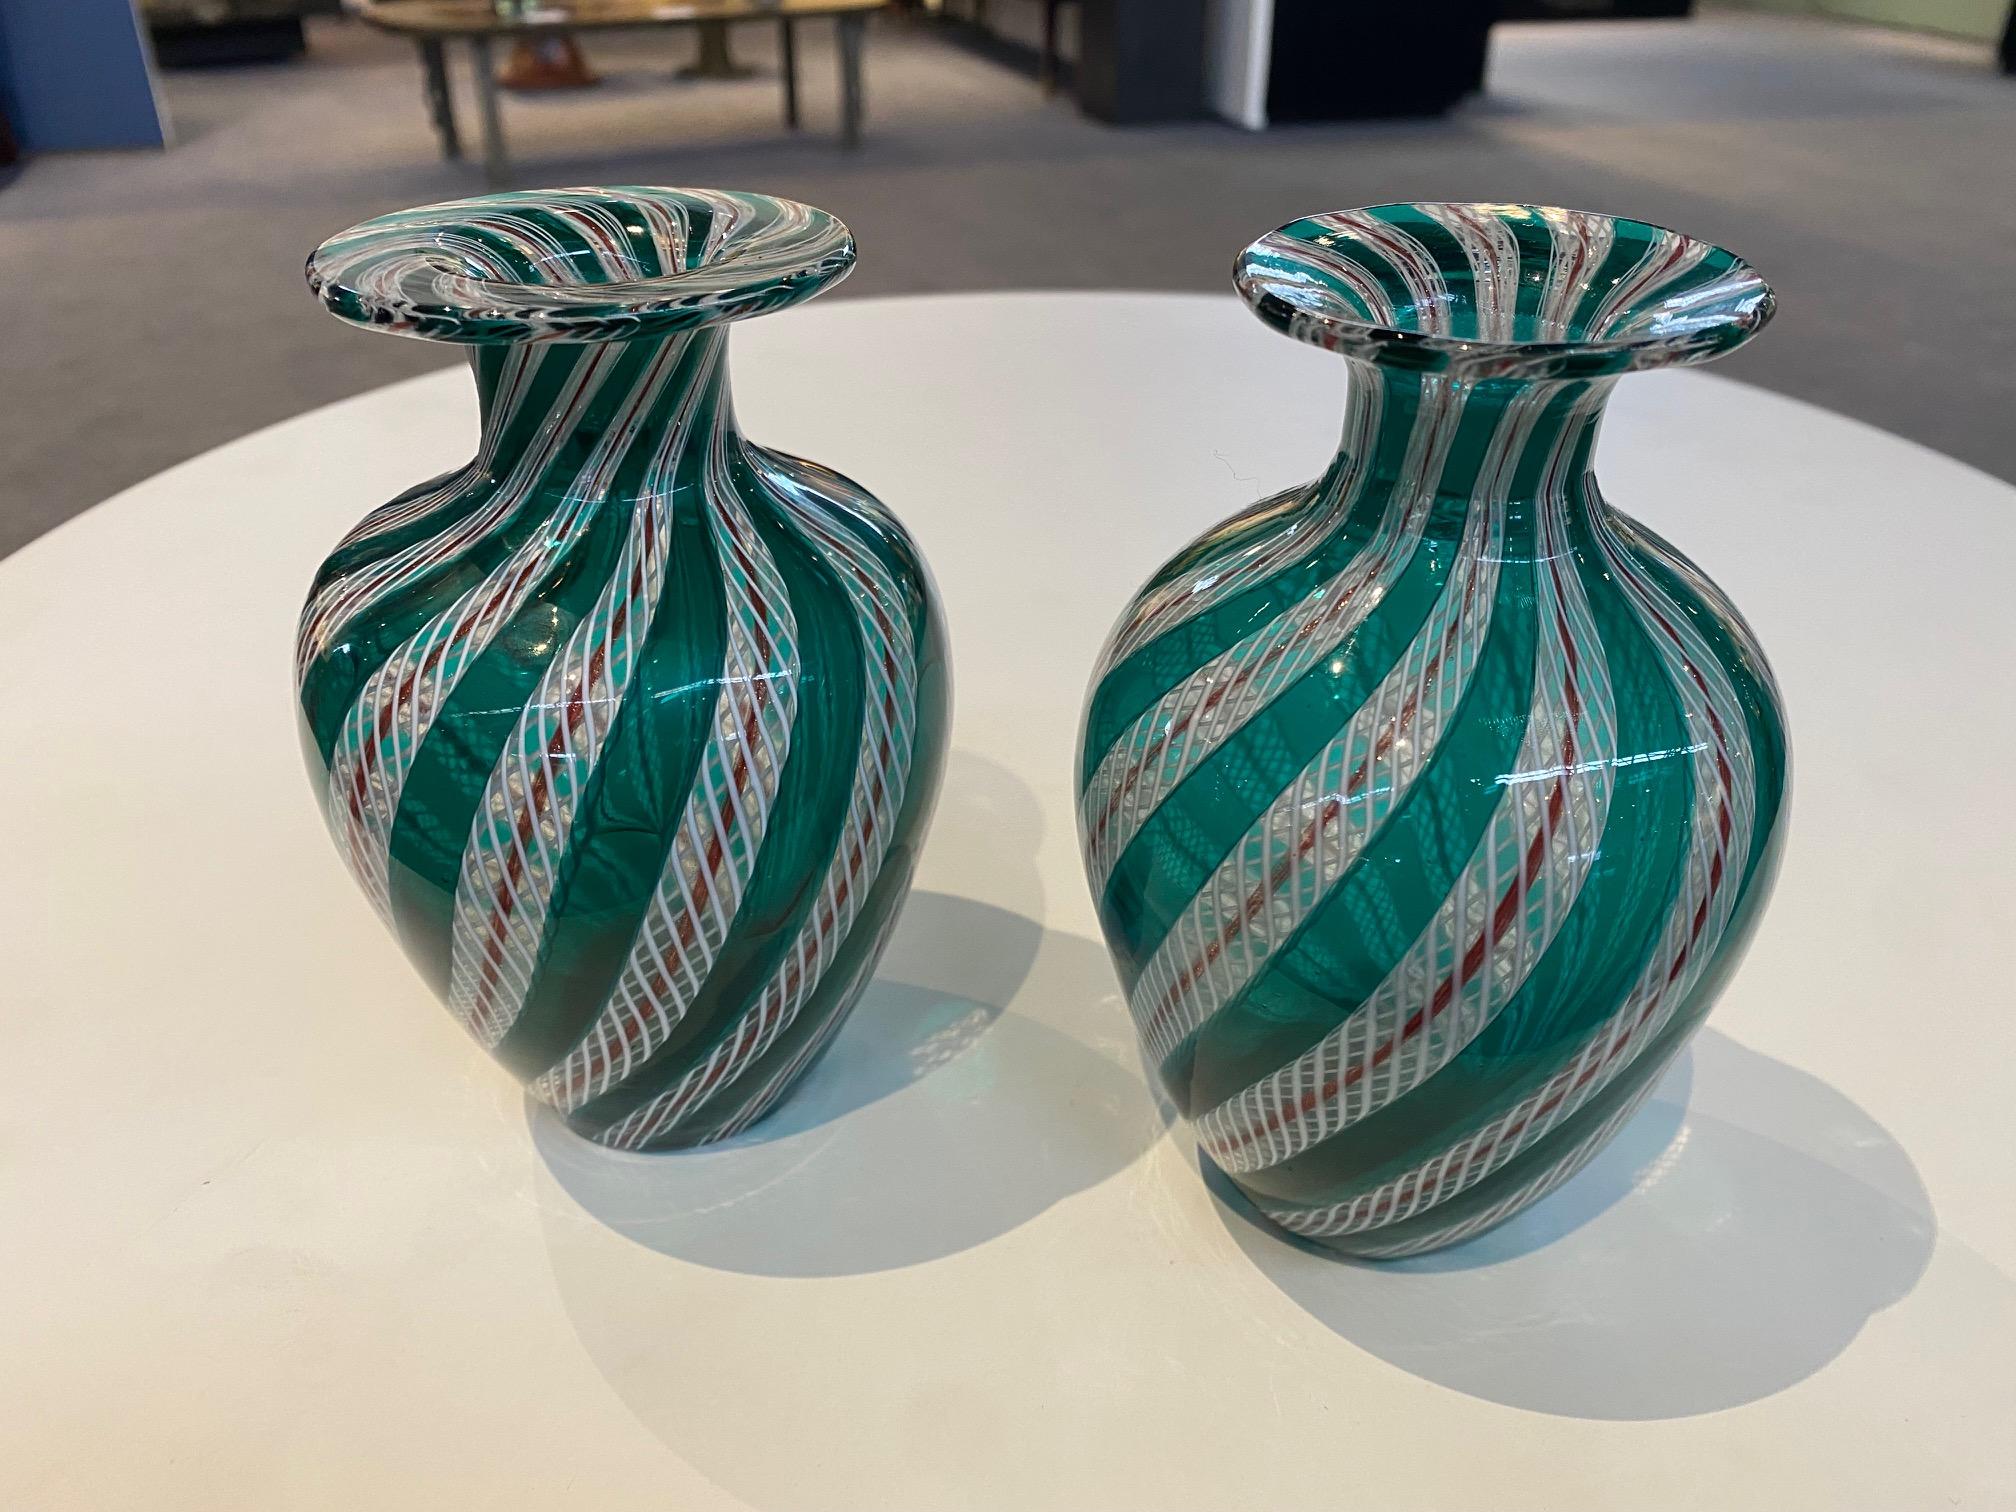 
Pair of Green Latticino Murano Glass Vases, circa 1950, 